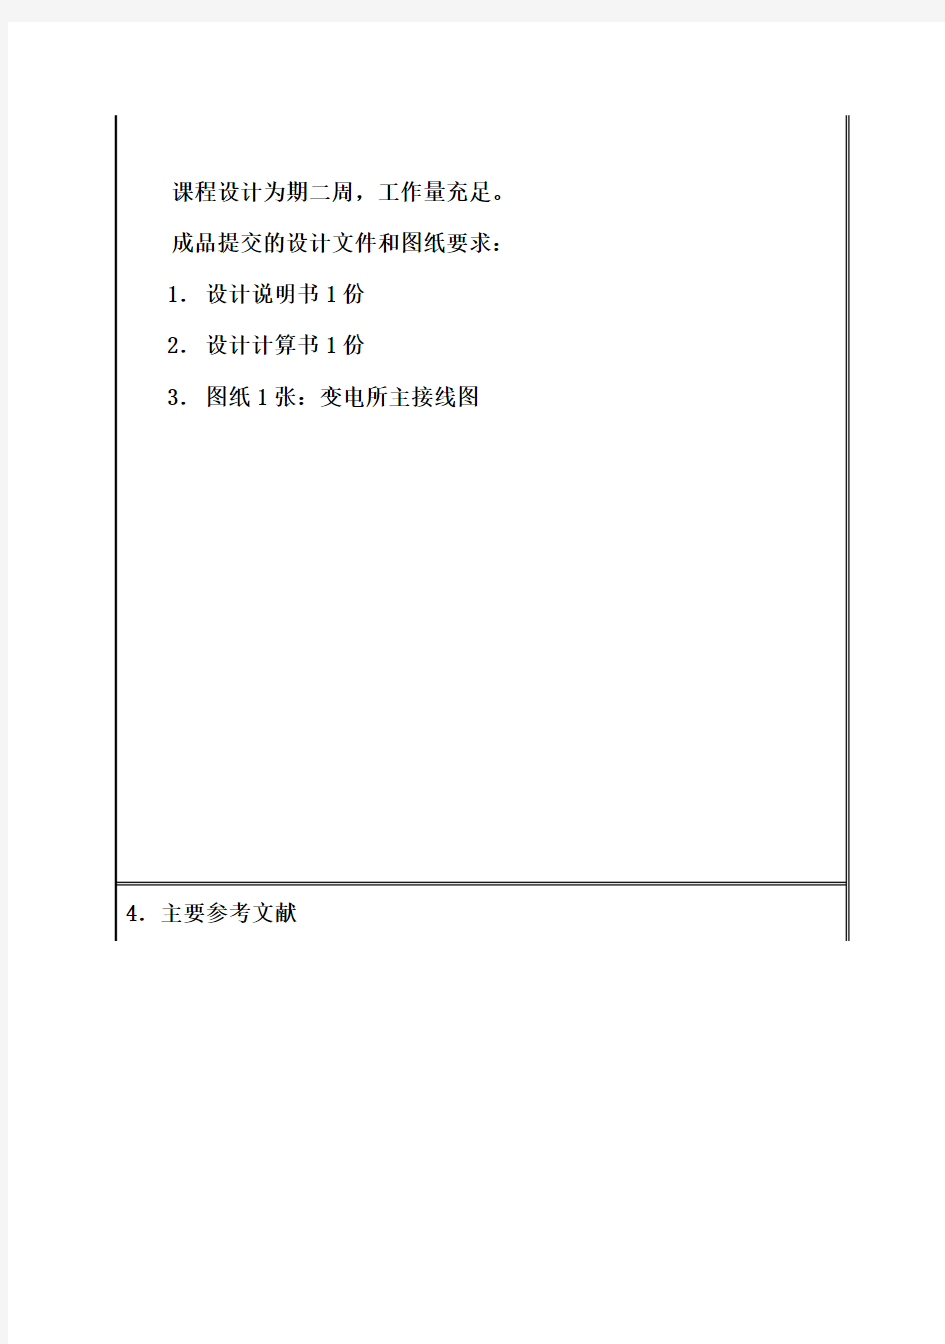 (完整版)发电厂电气部分毕业课程设计(南京工程学院)